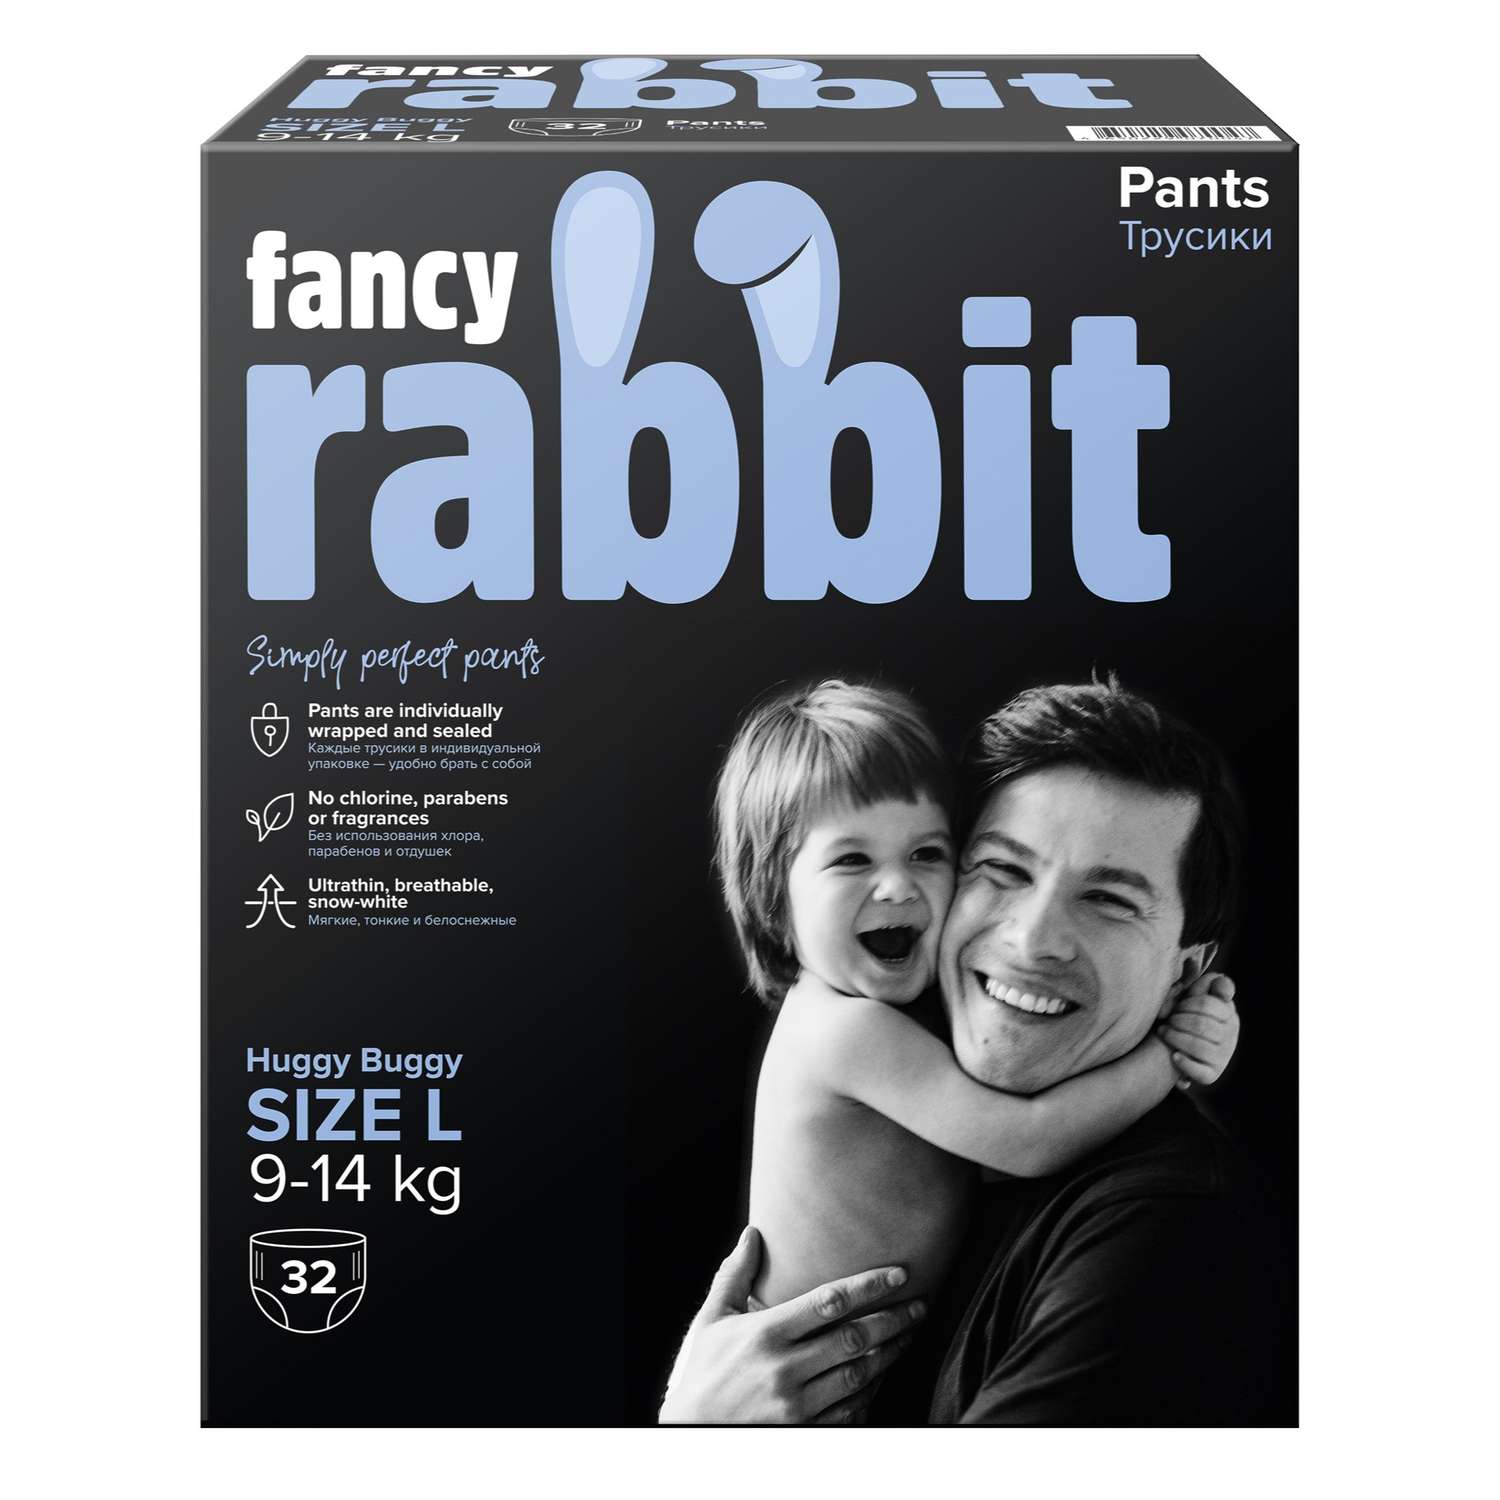 Трусики-подгузники Fancy Rabbit 9-14 кг L 32 шт - фото 8